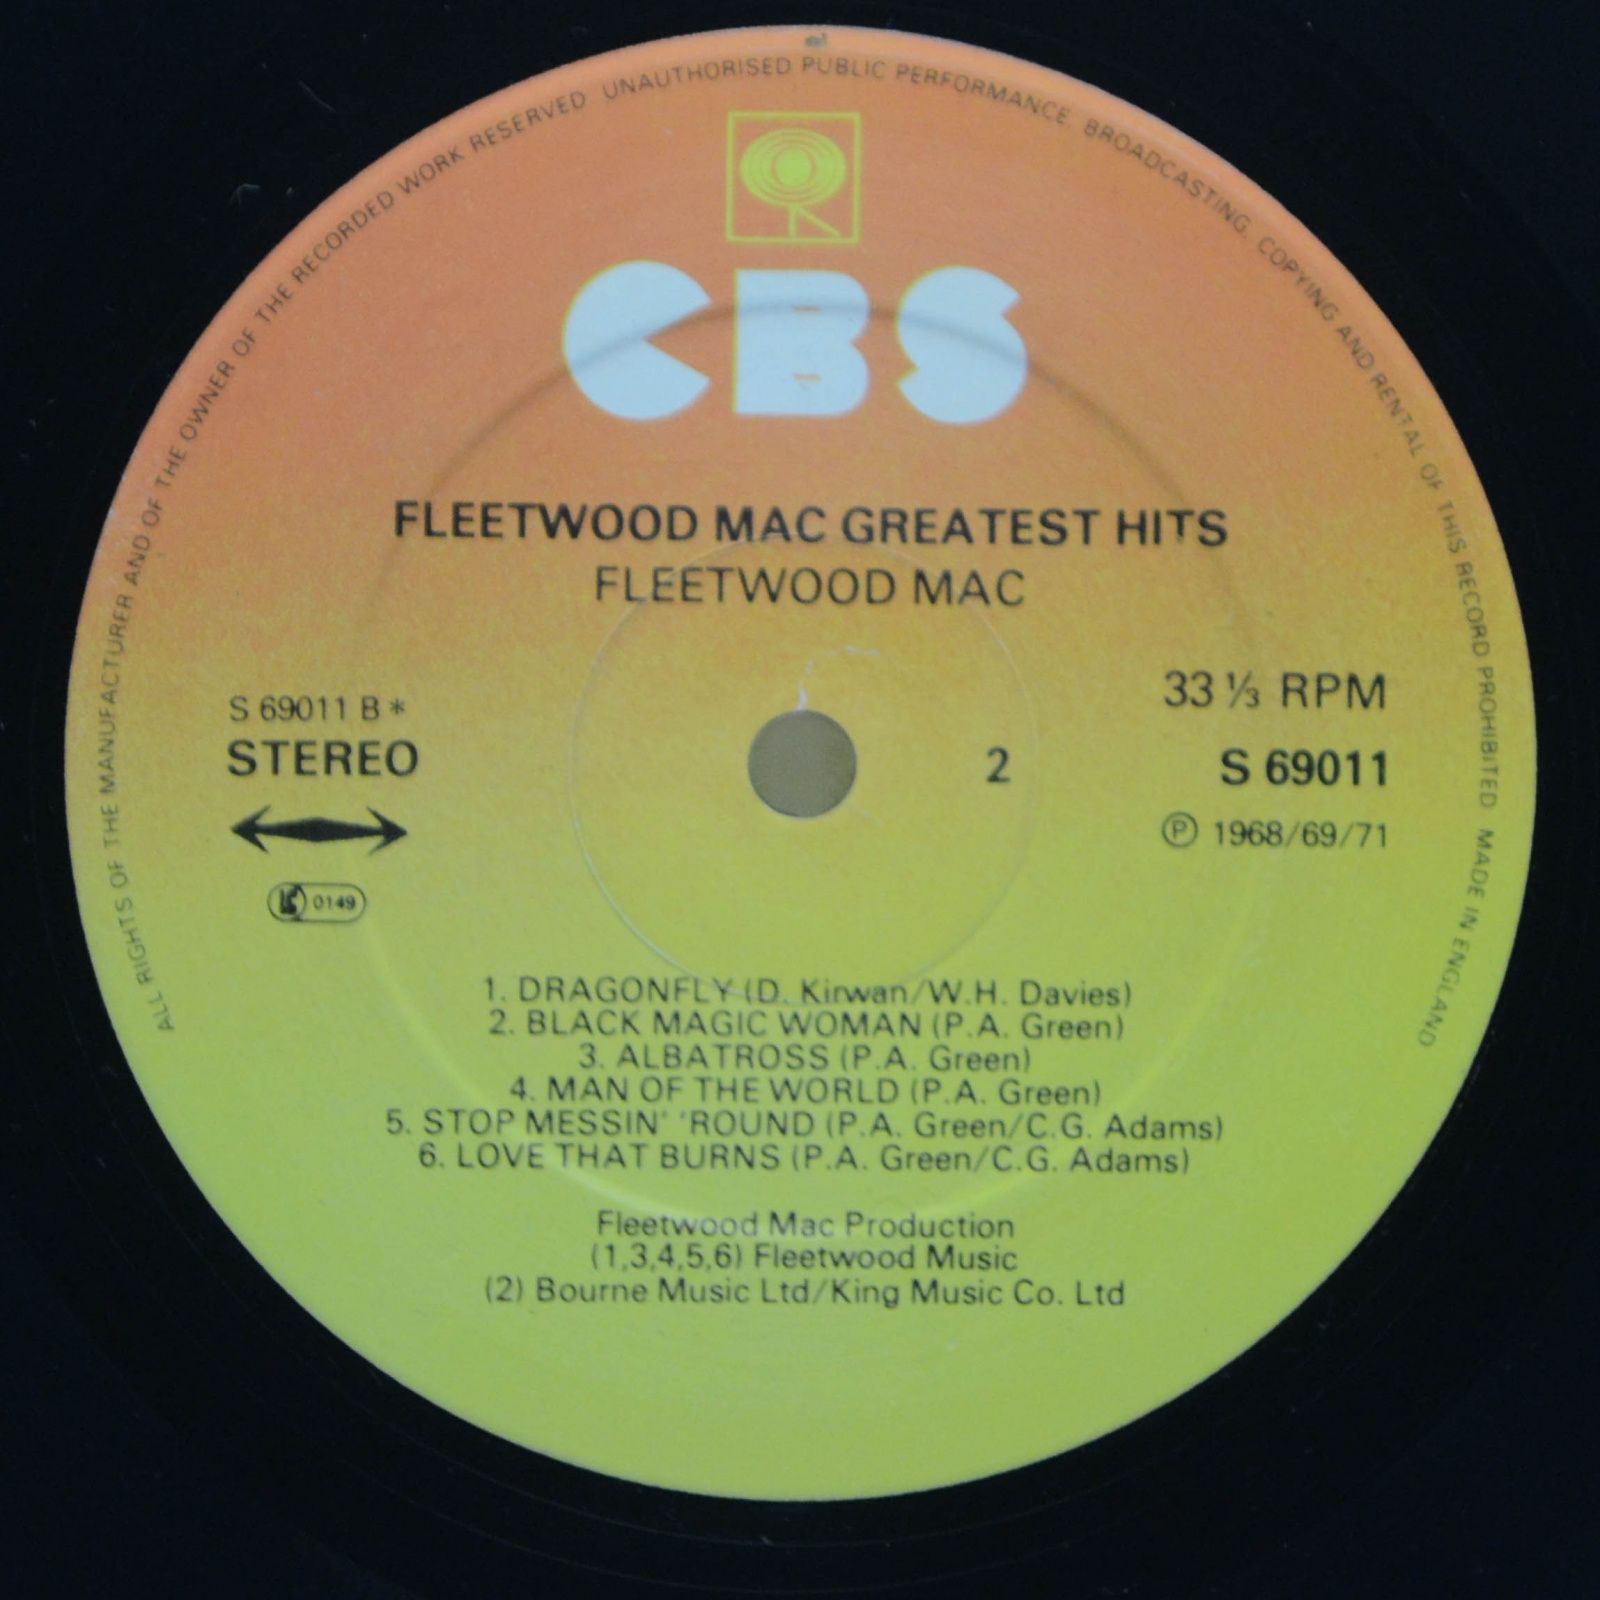 Fleetwood Mac — Fleetwood Mac Greatest Hits (UK), 1971